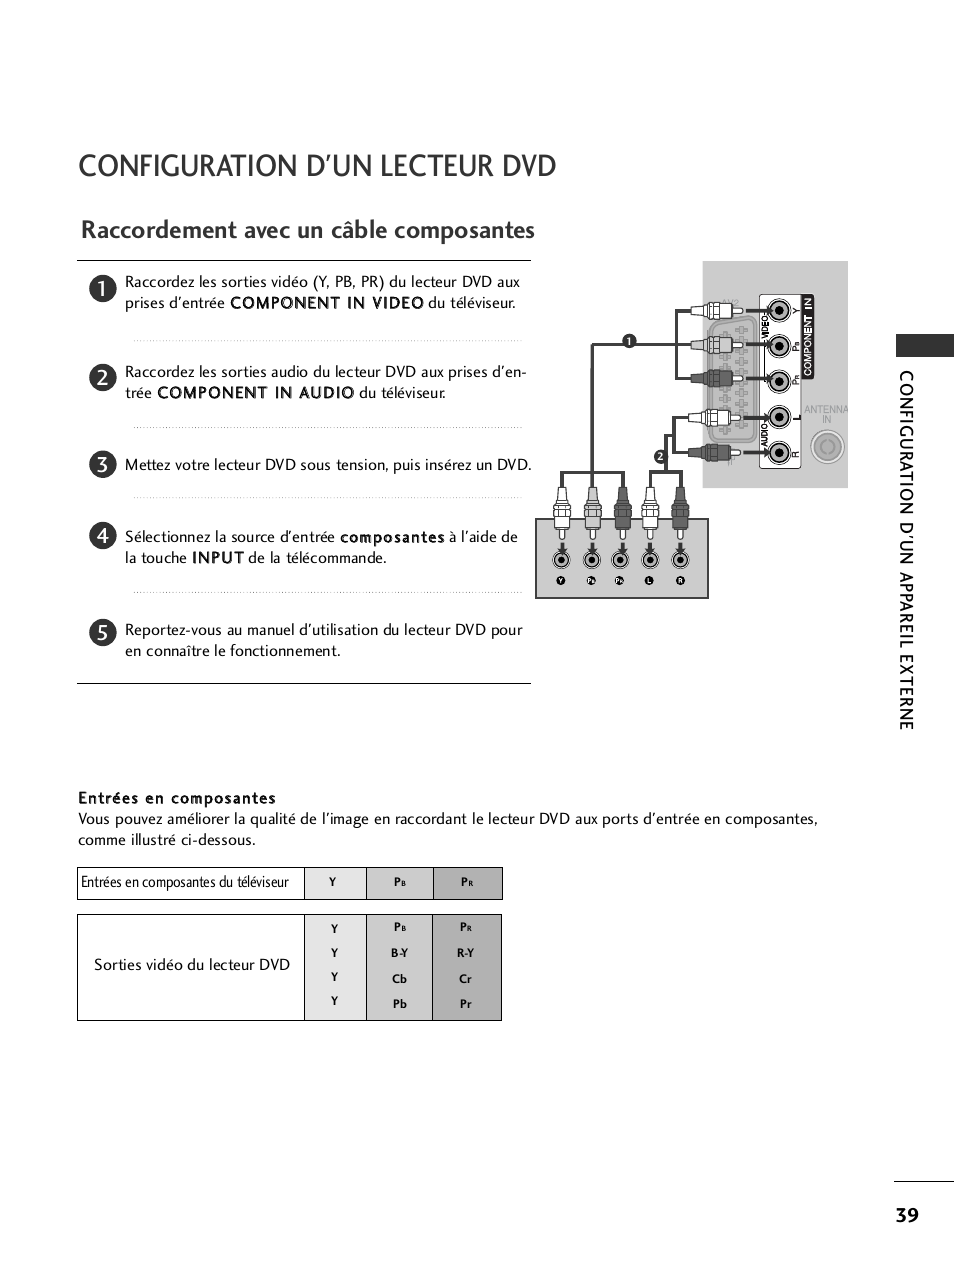 Configuration d'un lecteur dvd, Raccordement avec un câble composantes | LG 42LH9000 Manuel d'utilisation | Page 41 / 180